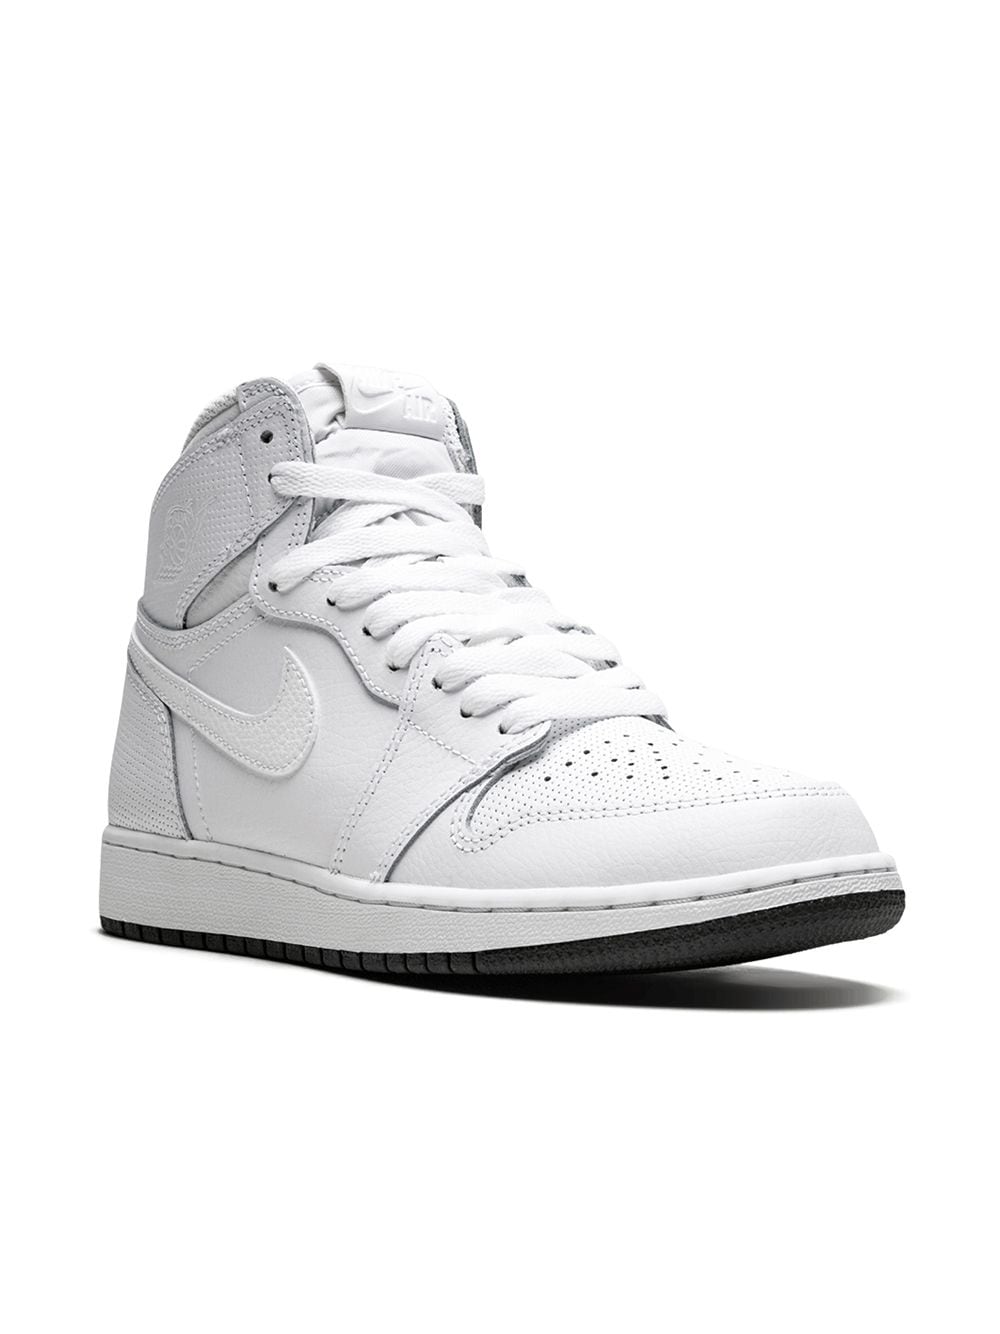 Jordan Kids Air Jordan 1 Retro High OG BG "Perforated" sneakers - White von Jordan Kids